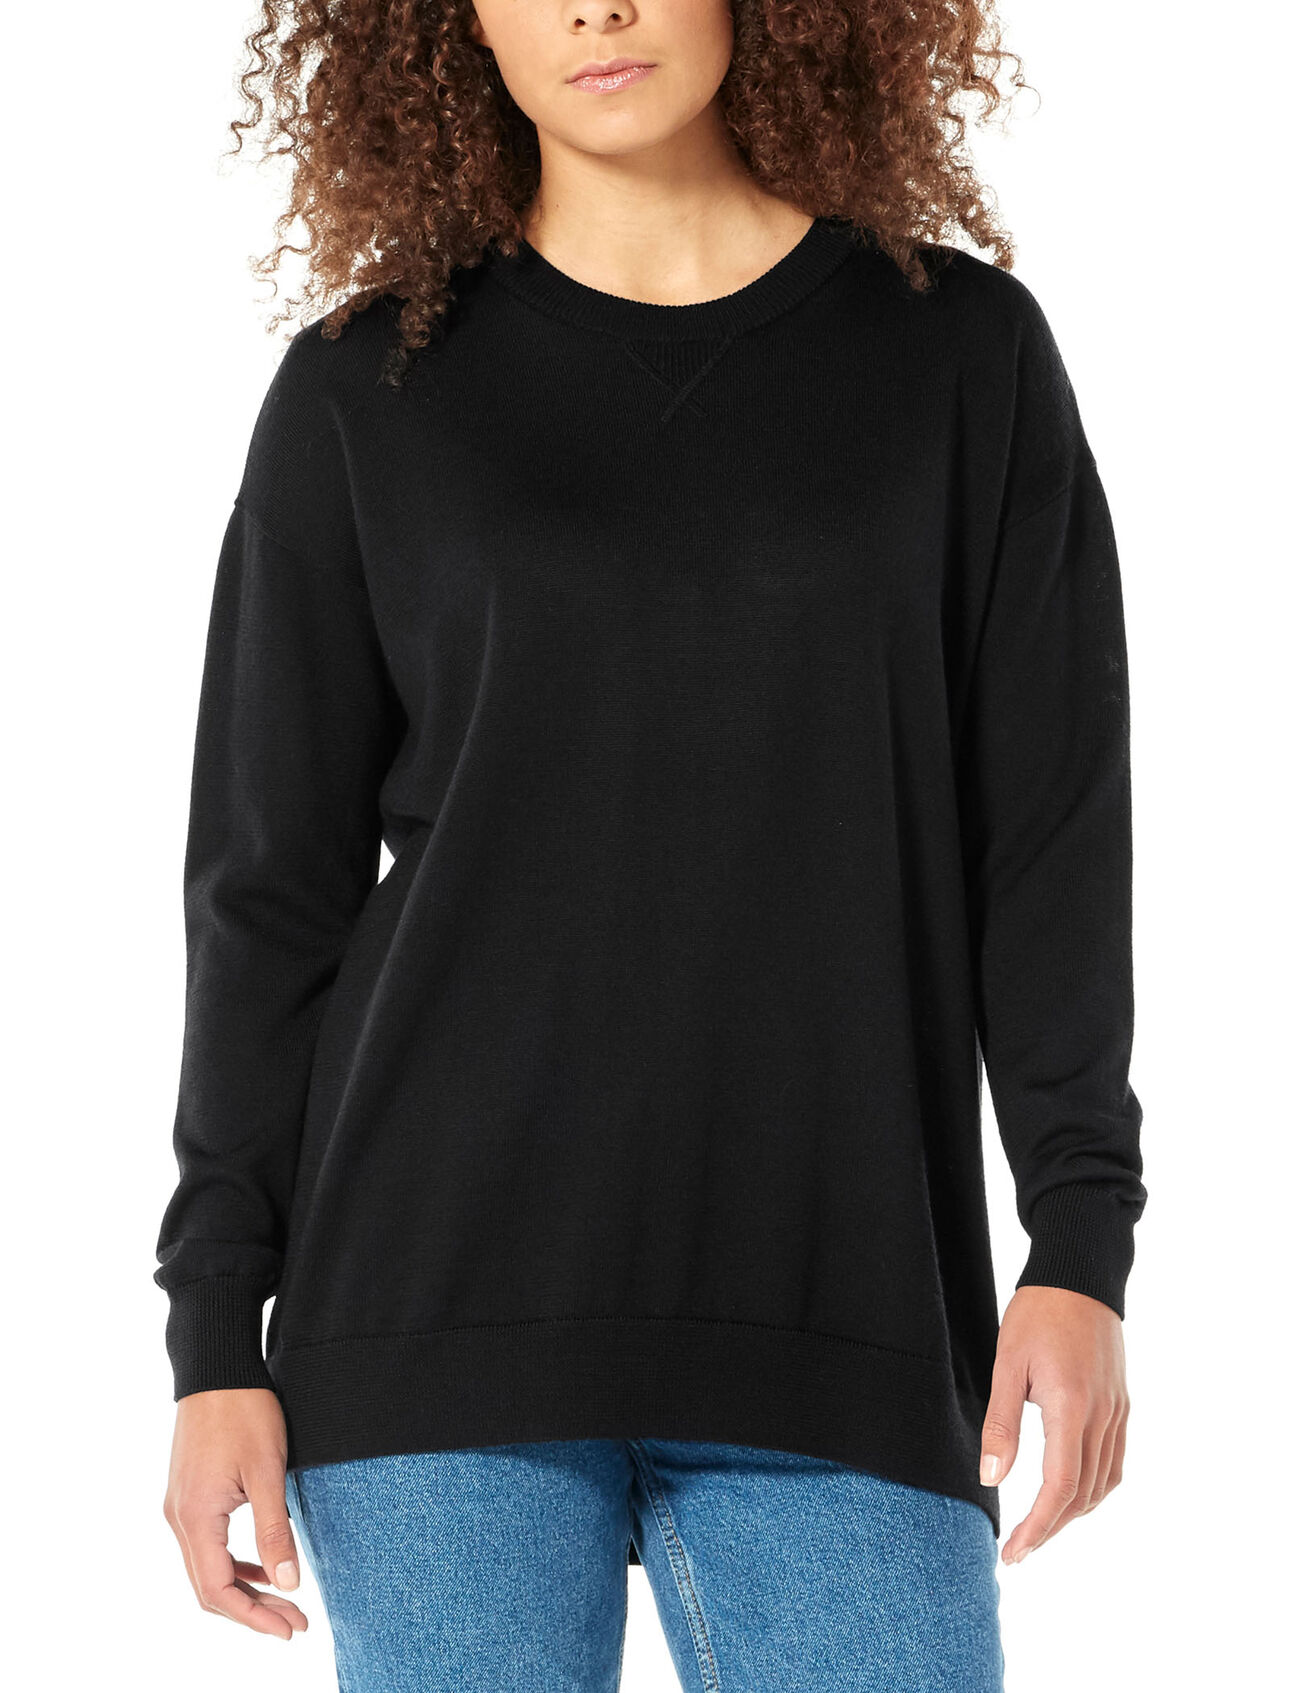 Cool-Lite™ Merino Nova Sweater Sweatshirt